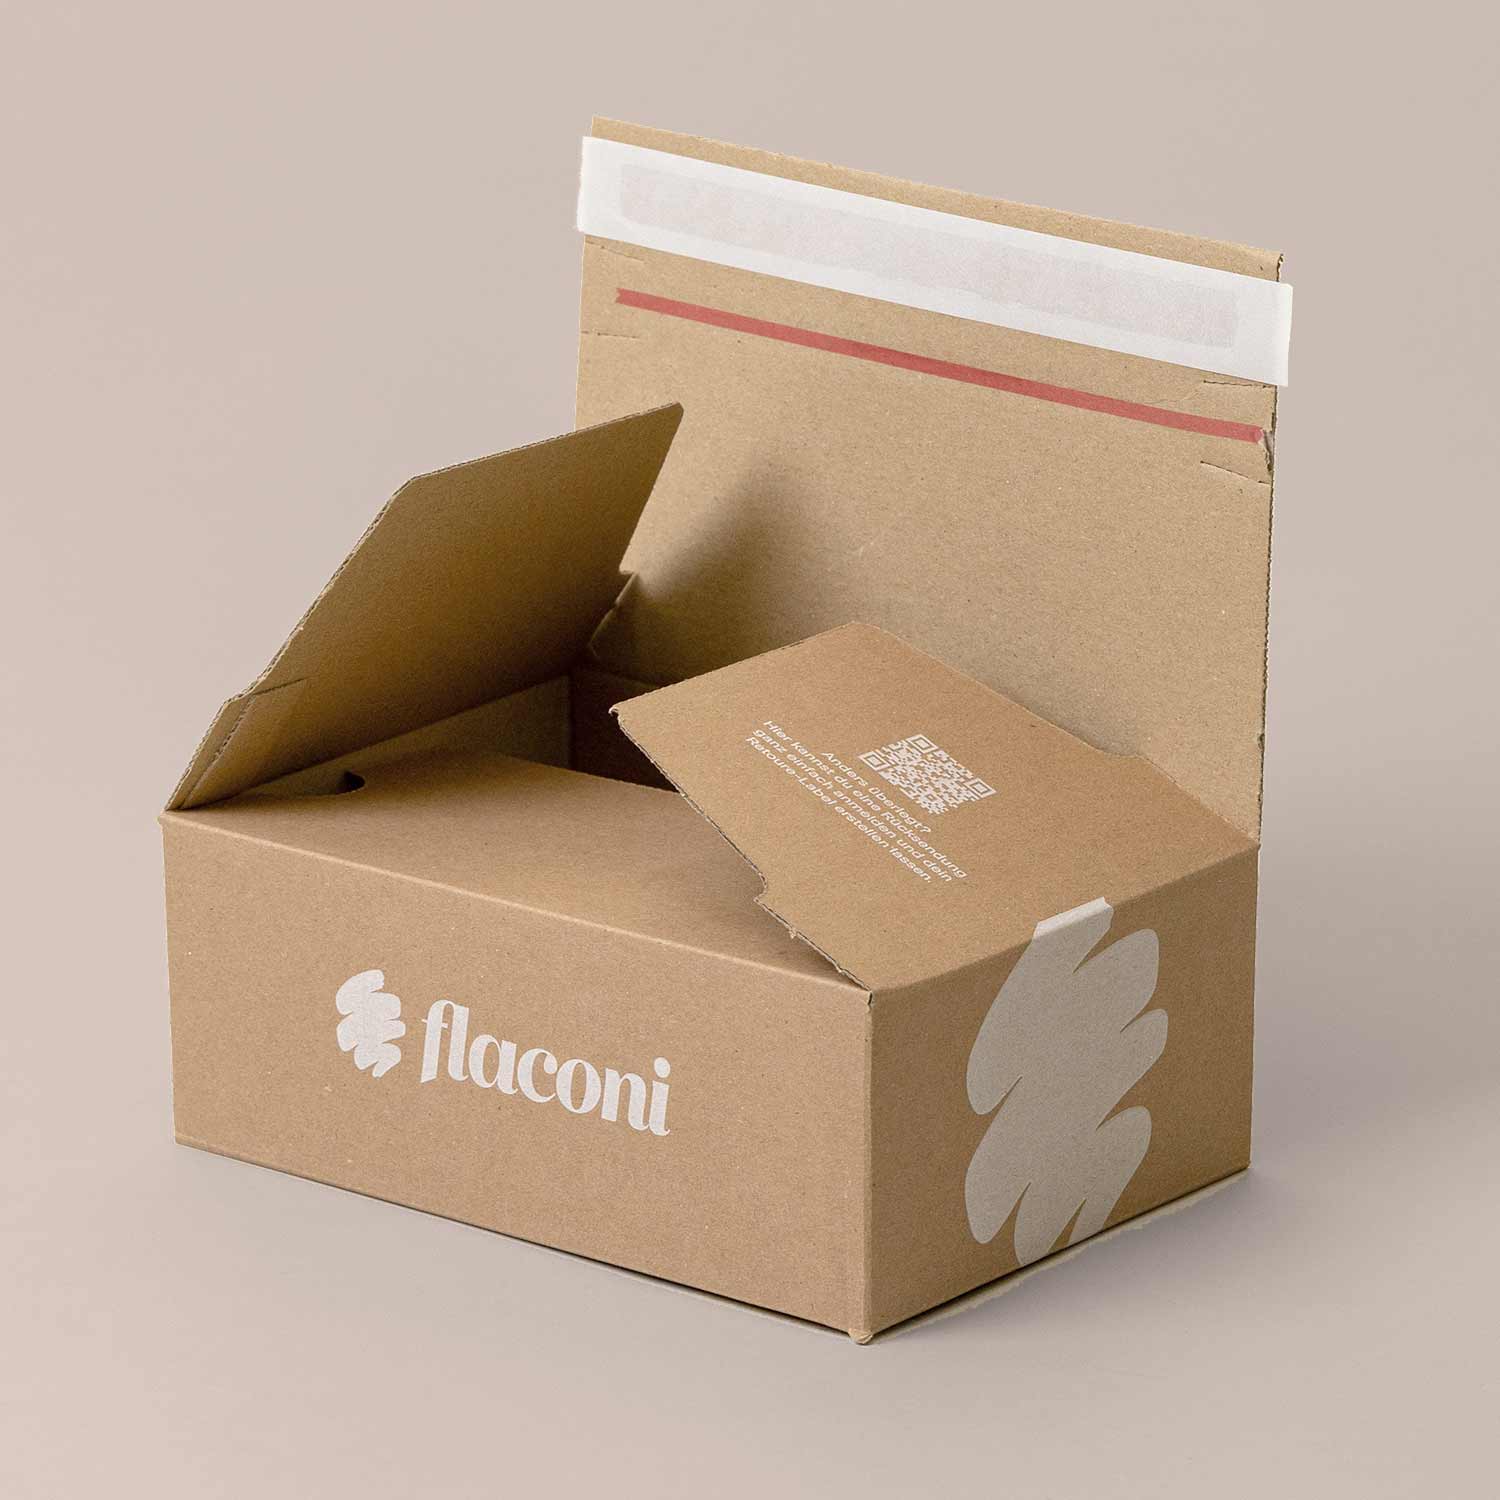 Krabice pro e-commerce s lepicími páskami